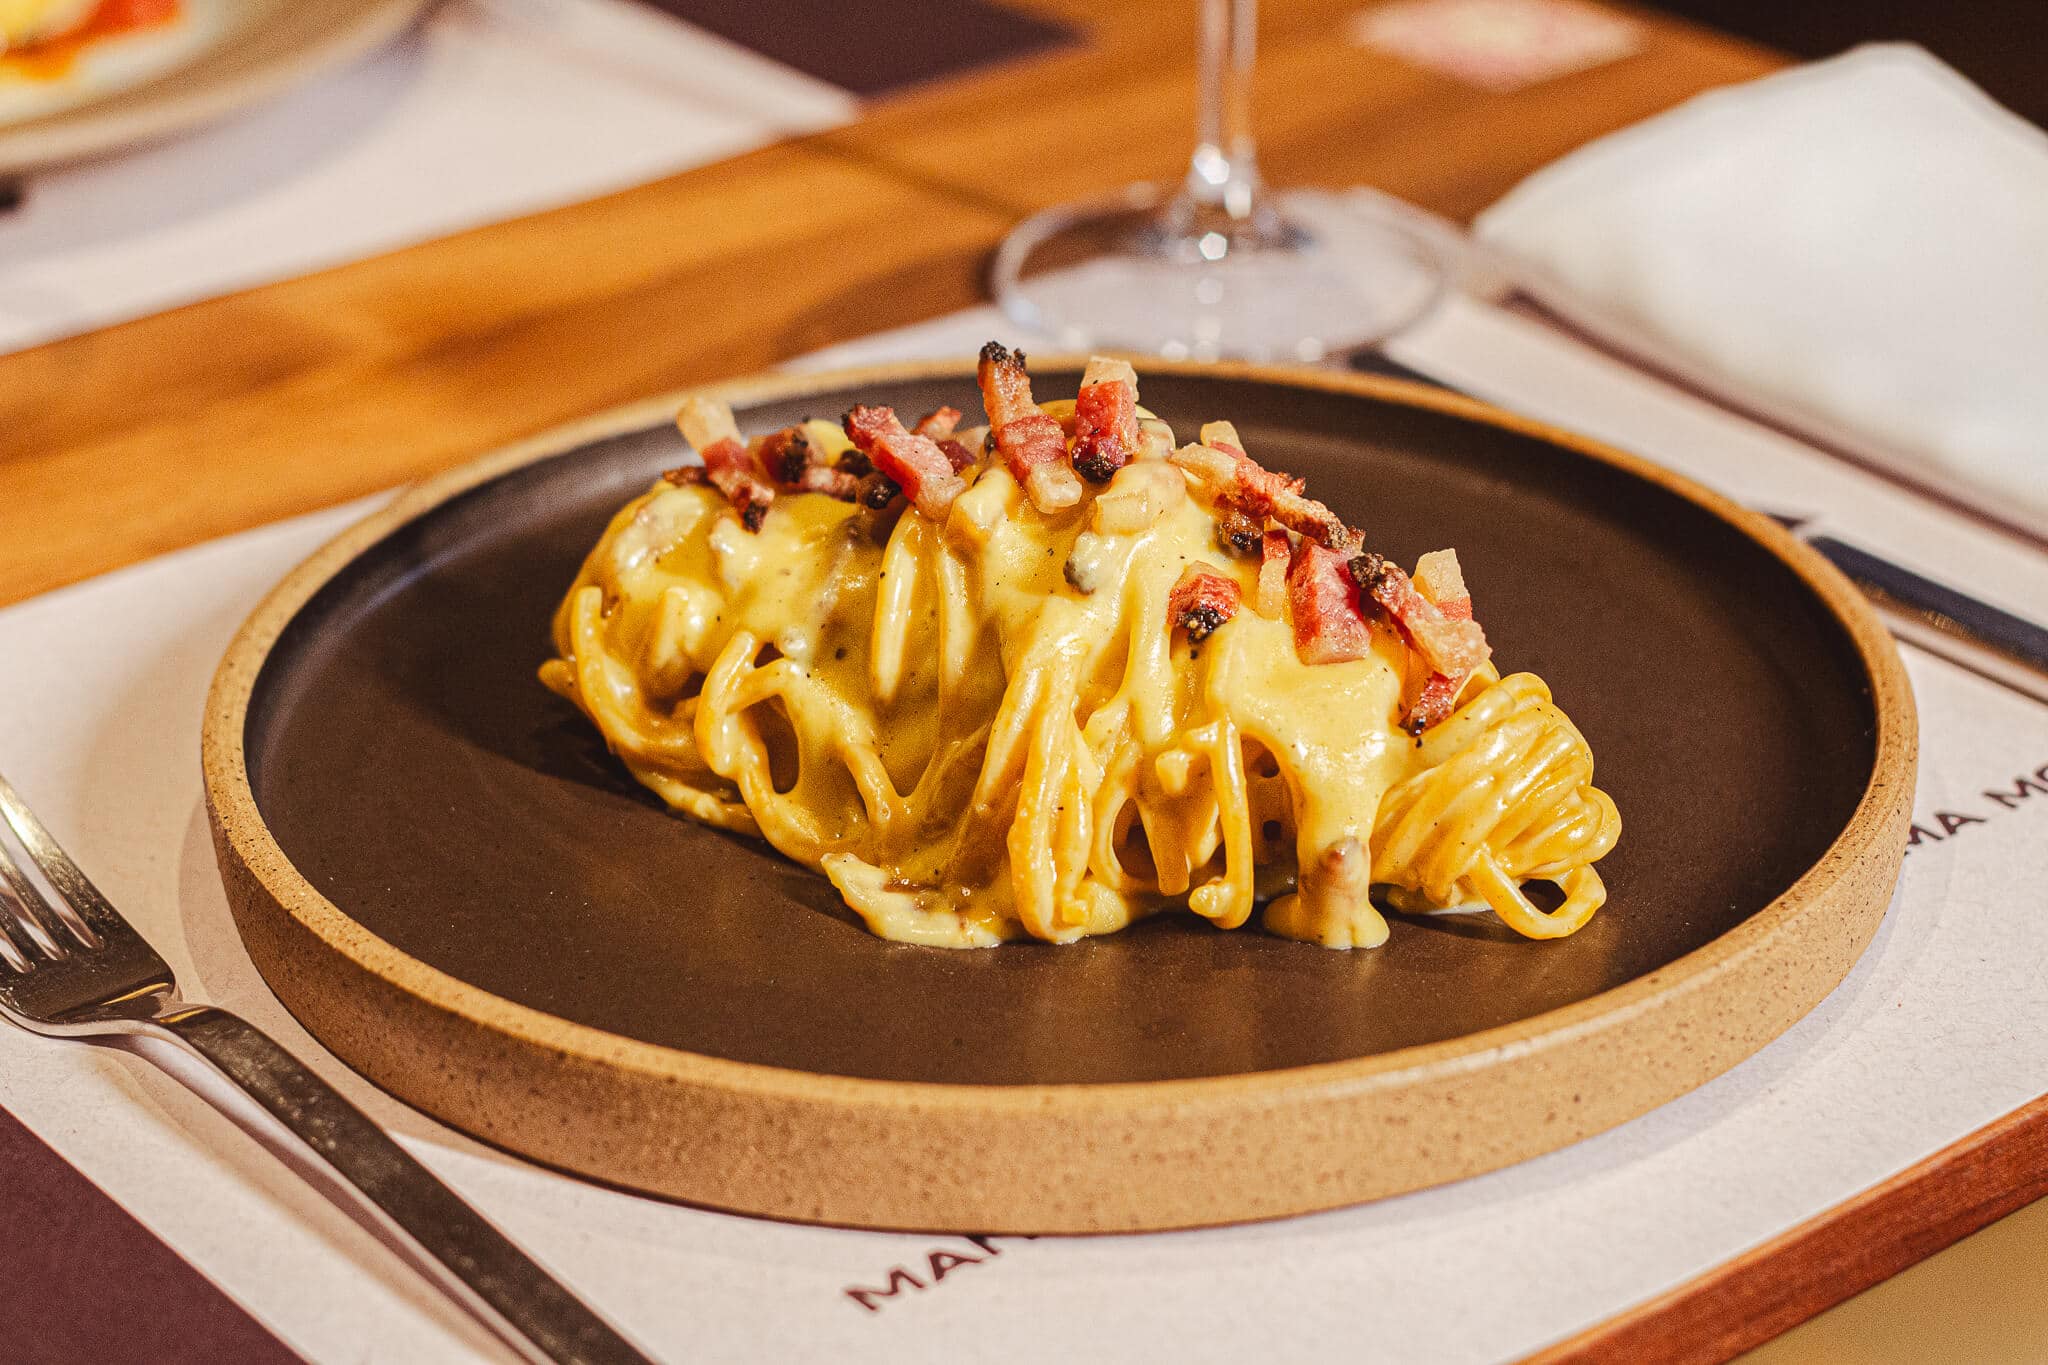 foto mostra um spaghetti em uma mesa posta, com prato redondo. Spaghetti alla chitarra Carbonara, com Guanciale (Bochecha de porco), gema de ovos caipiras, Pecorino e pimenta do reino! 